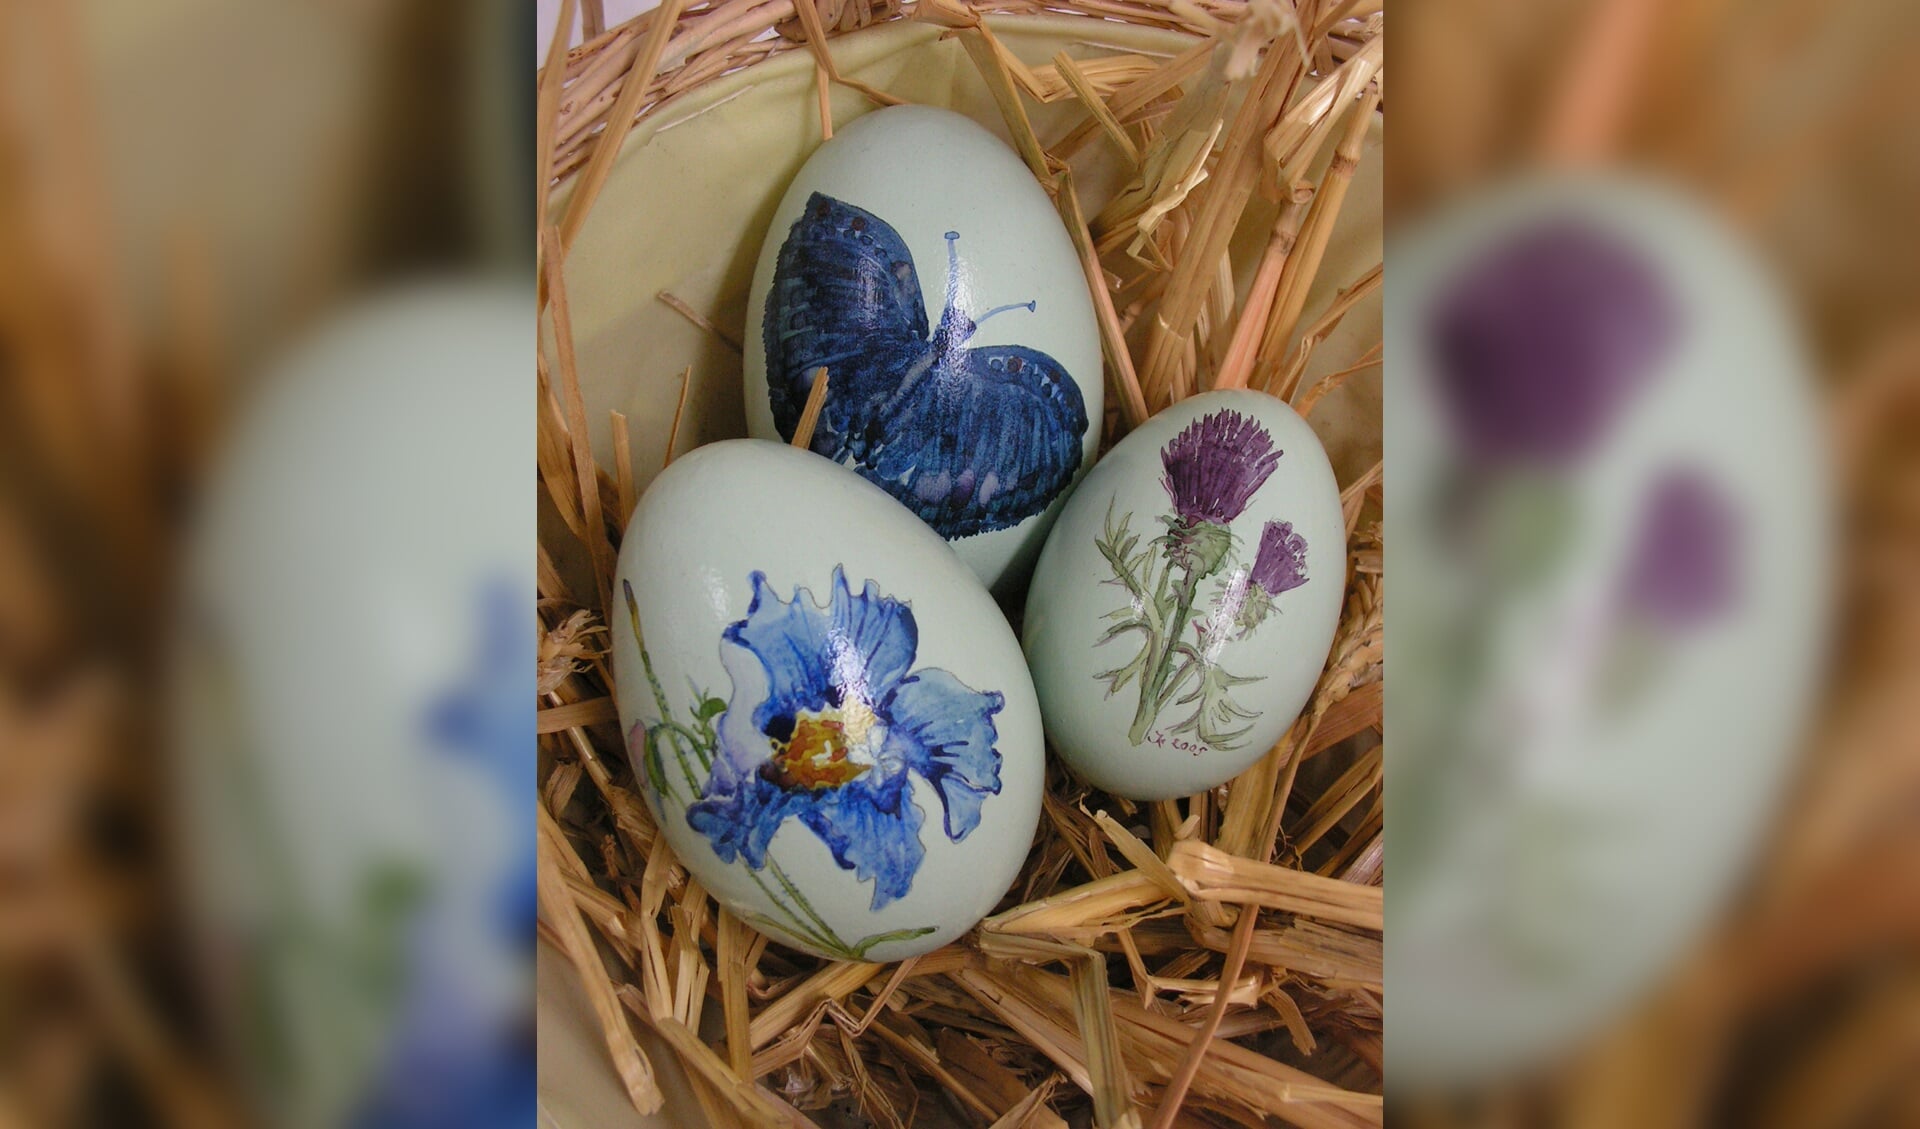 Fraai beschilderde eieren om in de stemming te komen van Pasen.